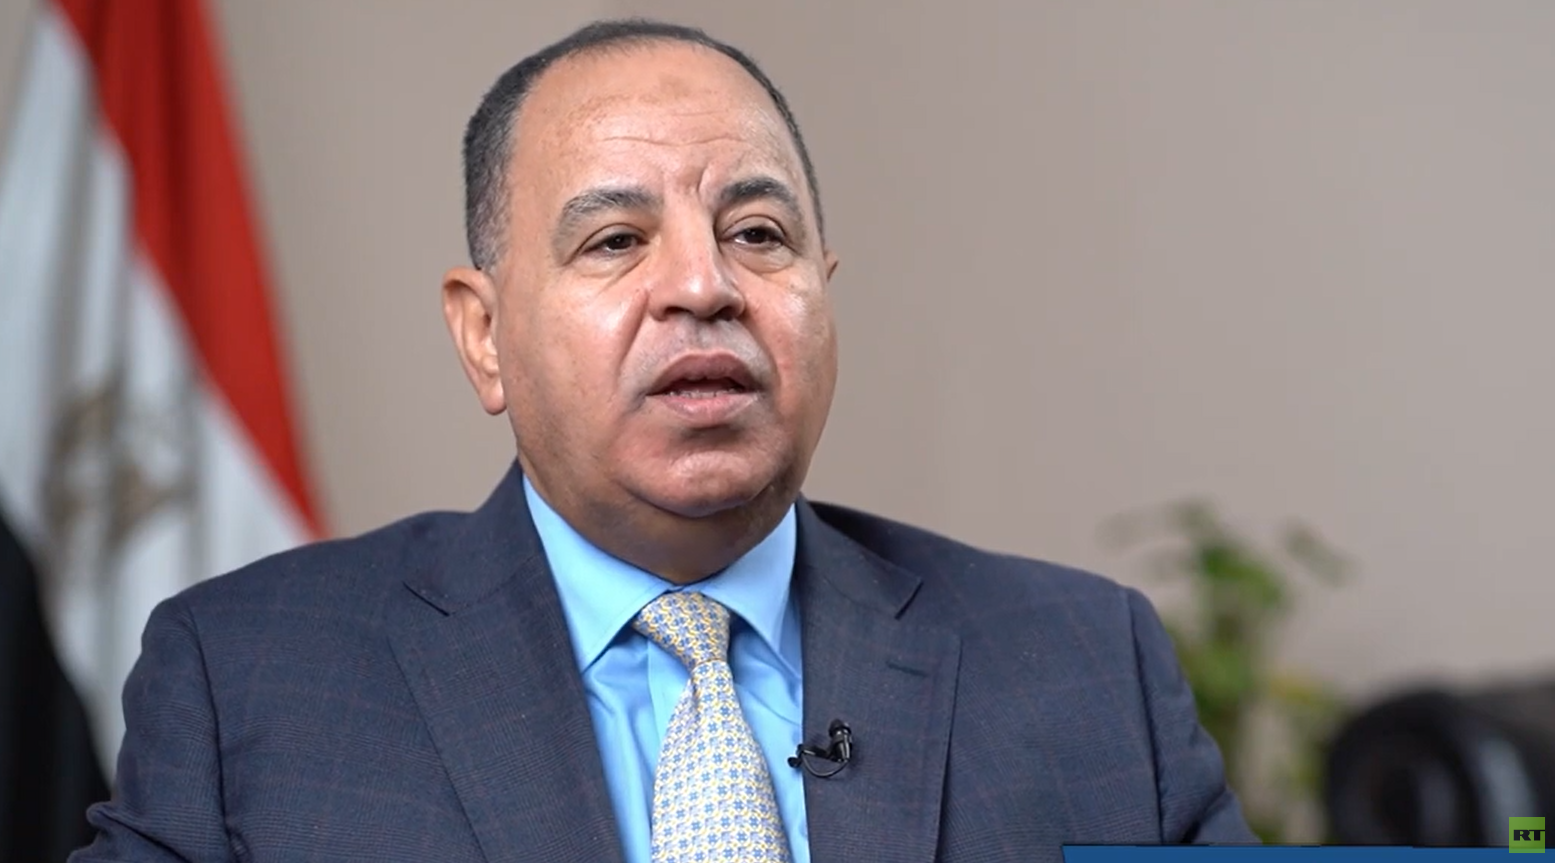 وزير المالية المصري يؤكد النجاح في تحقيق نتائج مالية جيدة لبنك التصدير والاستيراد الإفريقي